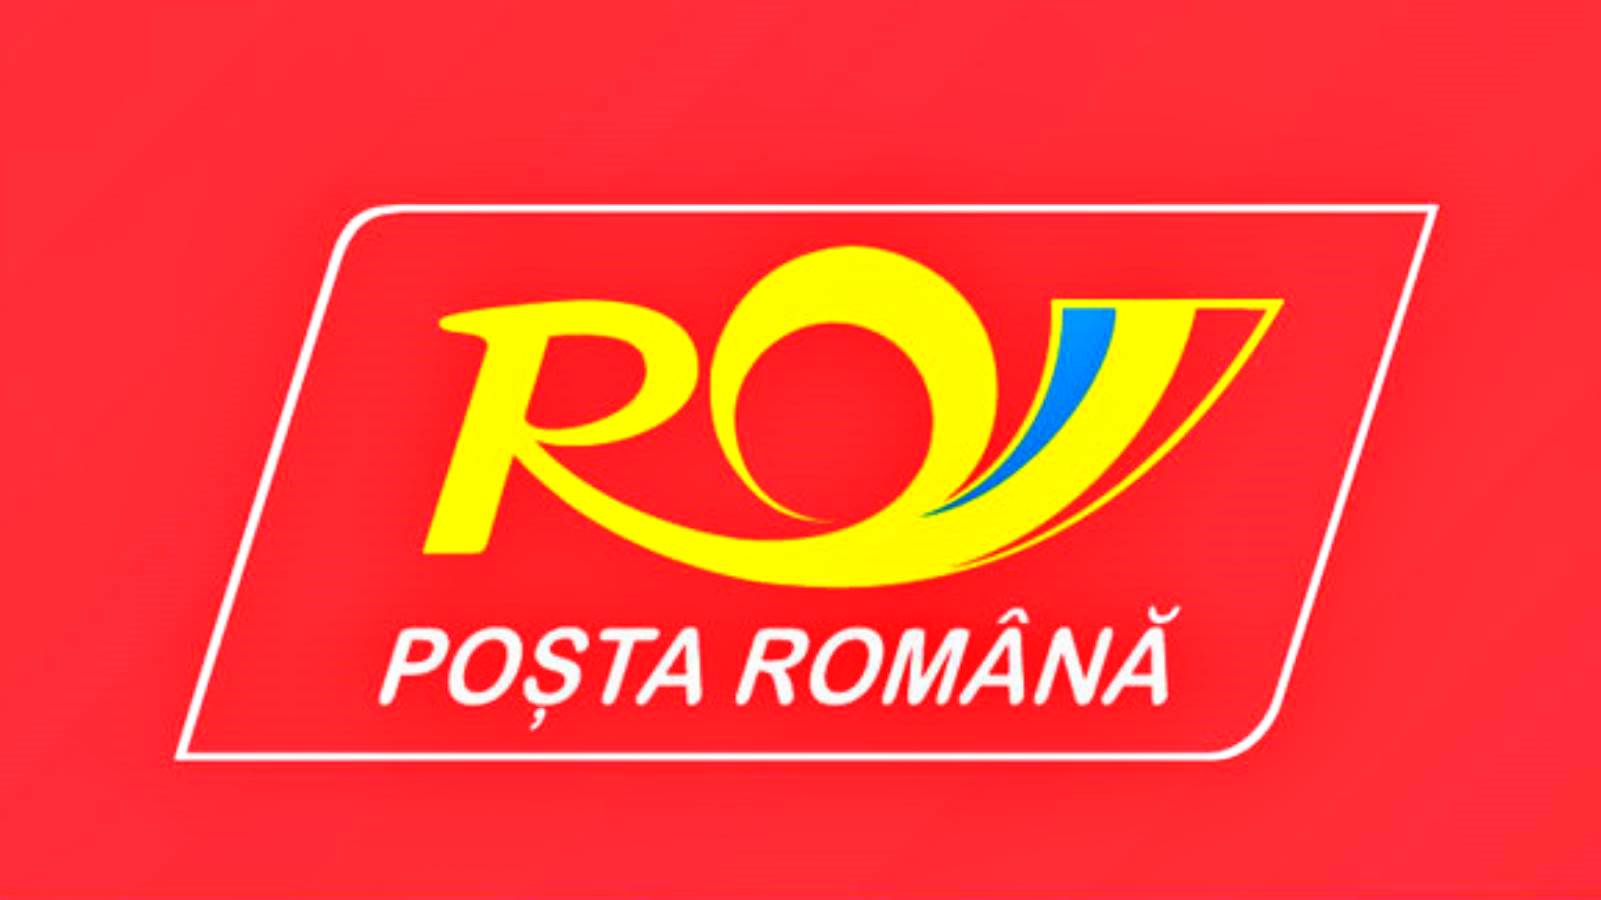 Le misure annunciate dalle Poste Rumene per i romeni in tutto il Paese